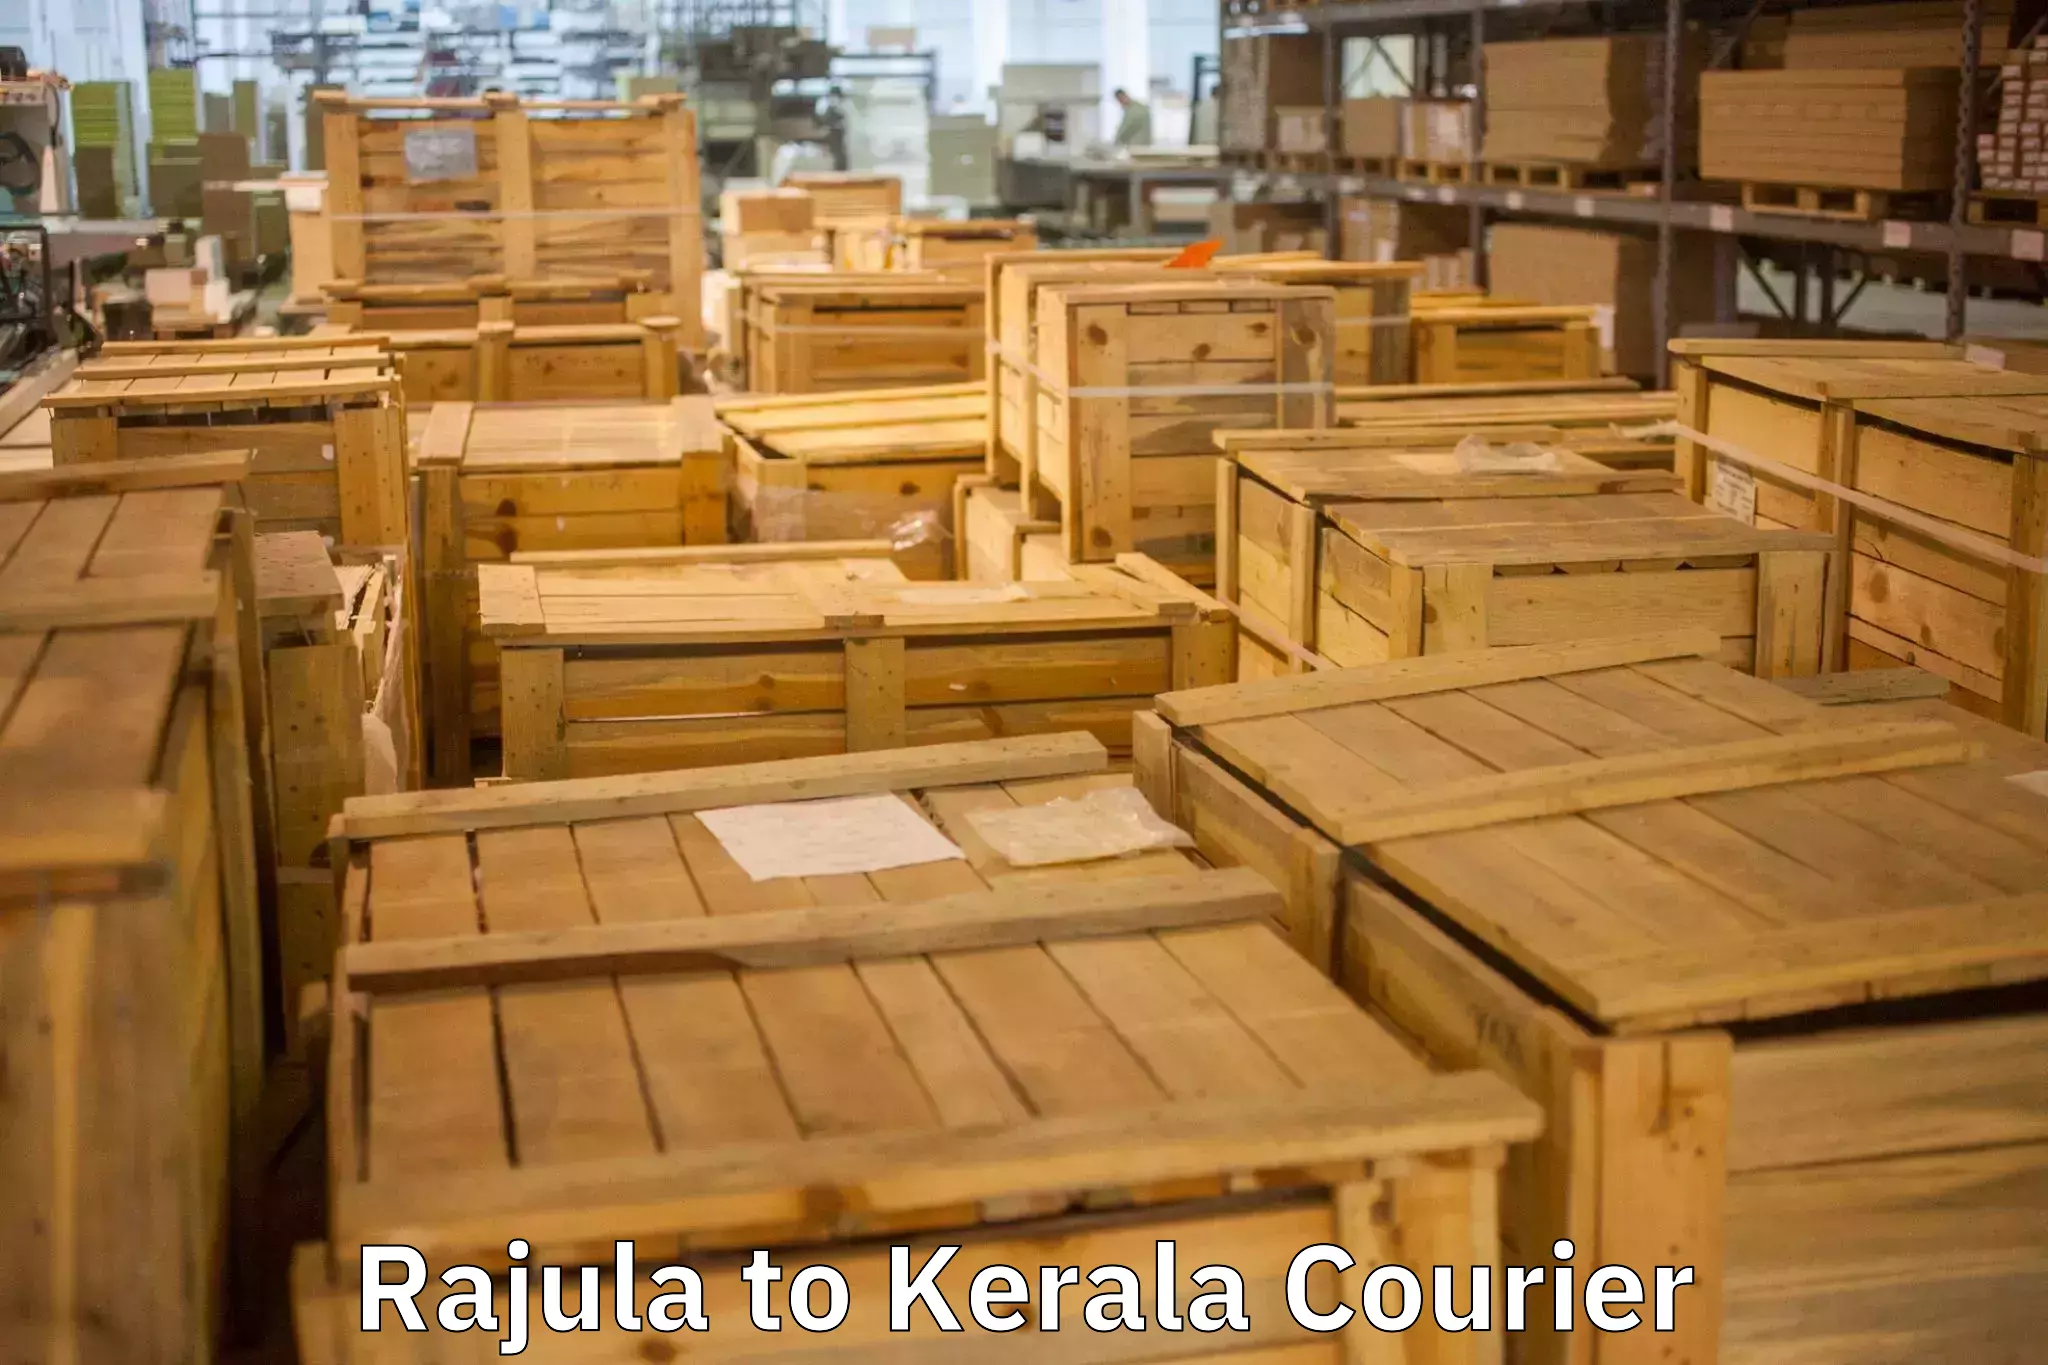 Full-service movers Rajula to Palai